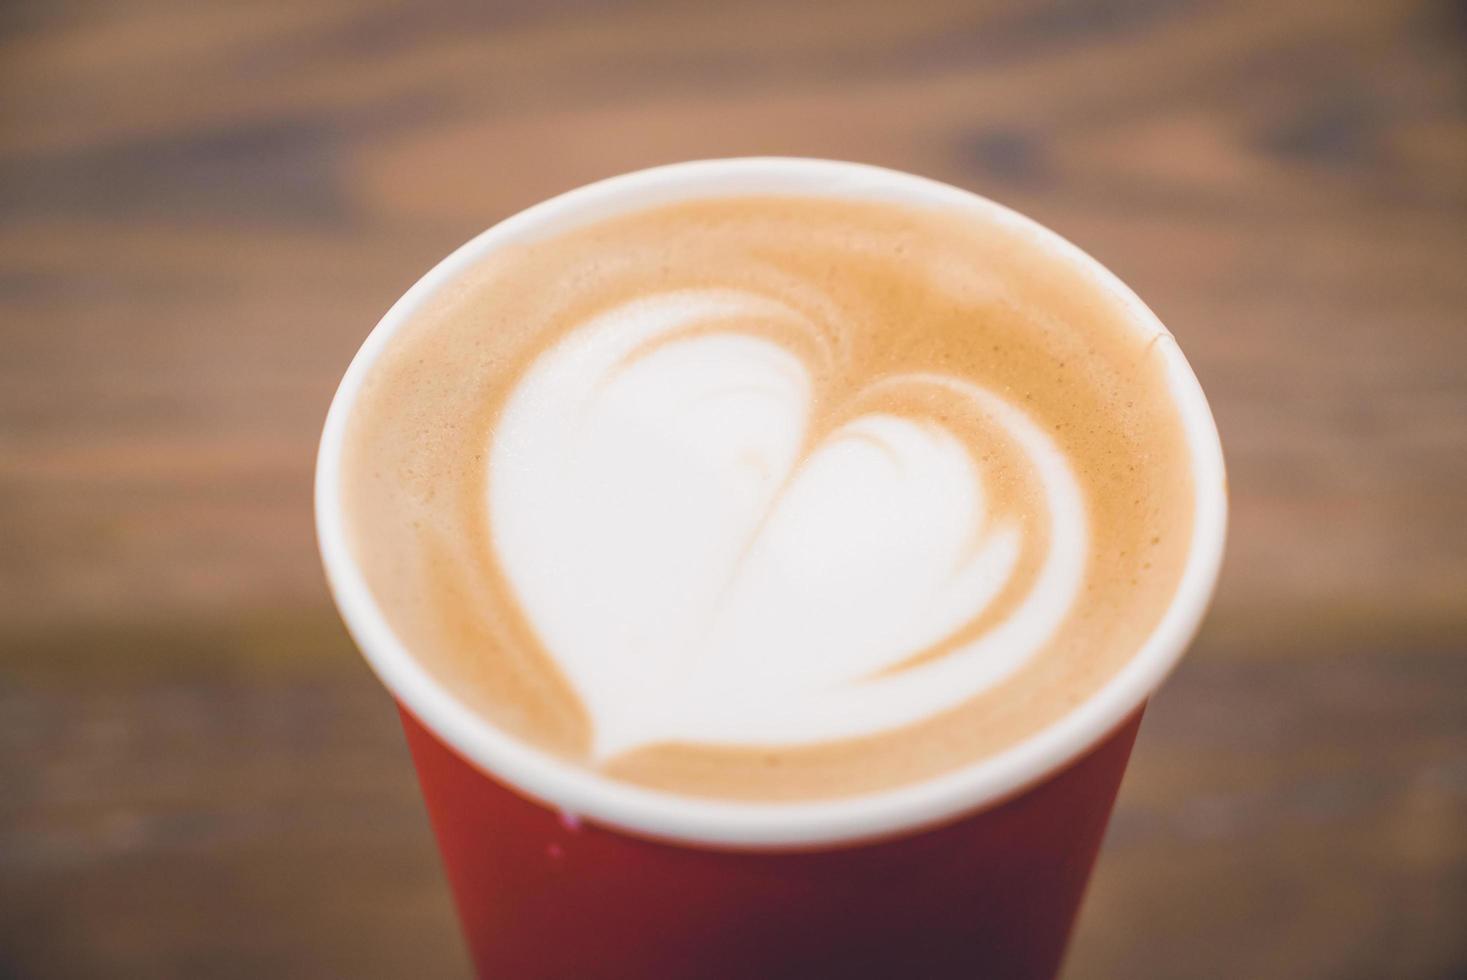 hart latte koffie in rode kop foto